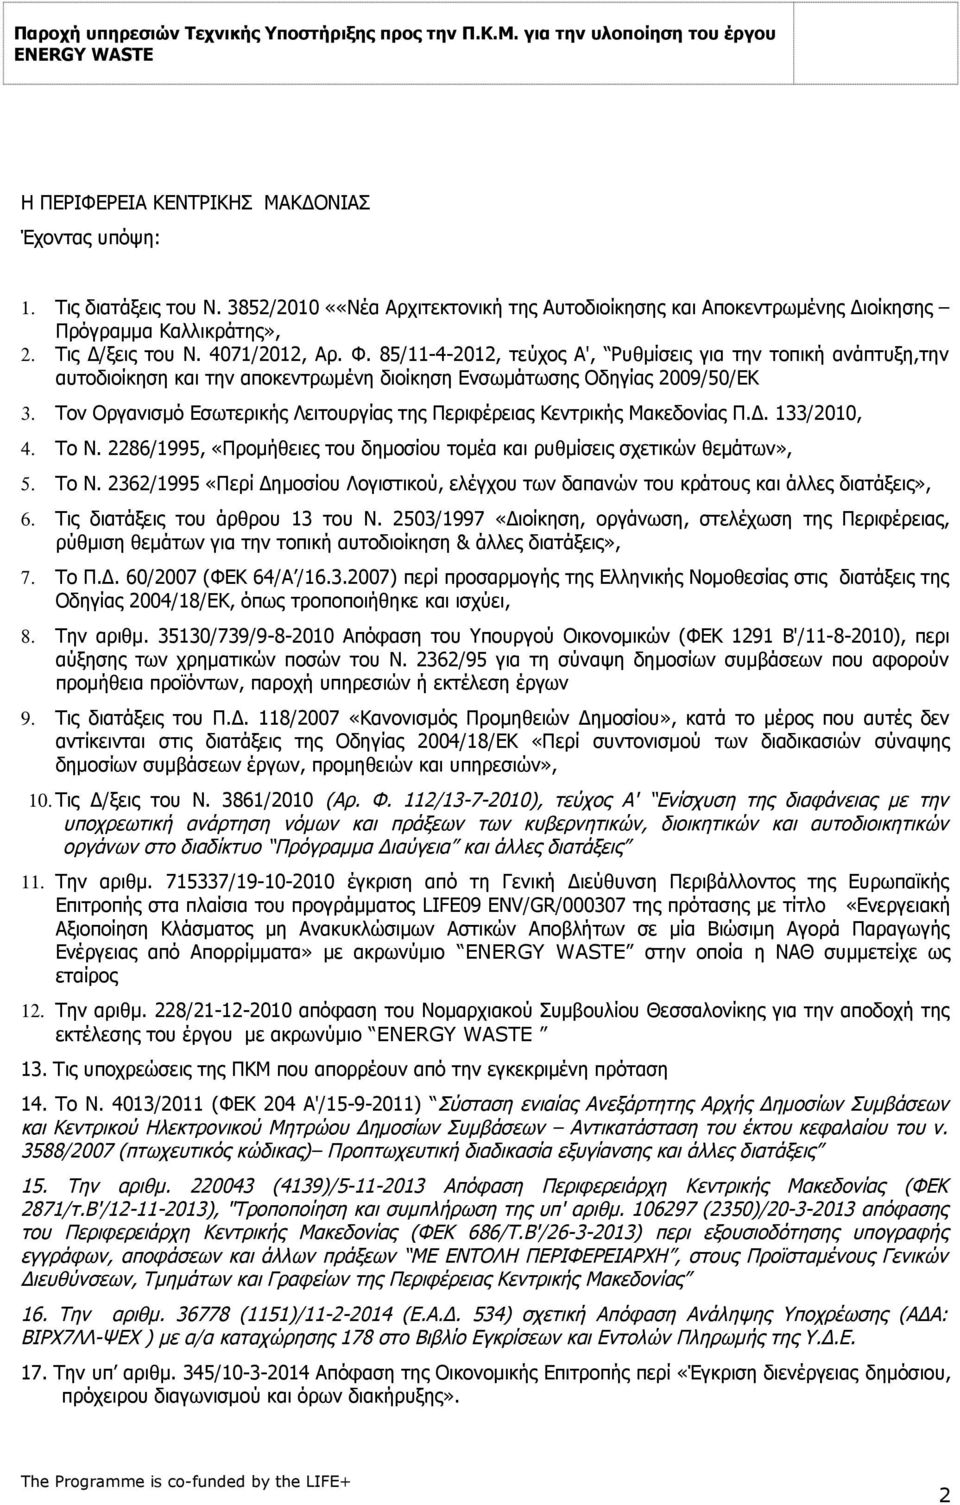 Τον Οργανισμό Εσωτερικής Λειτουργίας της Περιφέρειας Κεντρικής Μακεδονίας Π.Δ. 133/2010, 4. Το Ν. 2286/1995, «Προμήθειες του δημοσίου τομέα και ρυθμίσεις σχετικών θεμάτων», 5. Το Ν. 2362/1995 «Περί Δημοσίου Λογιστικού, ελέγχου των δαπανών του κράτους και άλλες διατάξεις», 6.